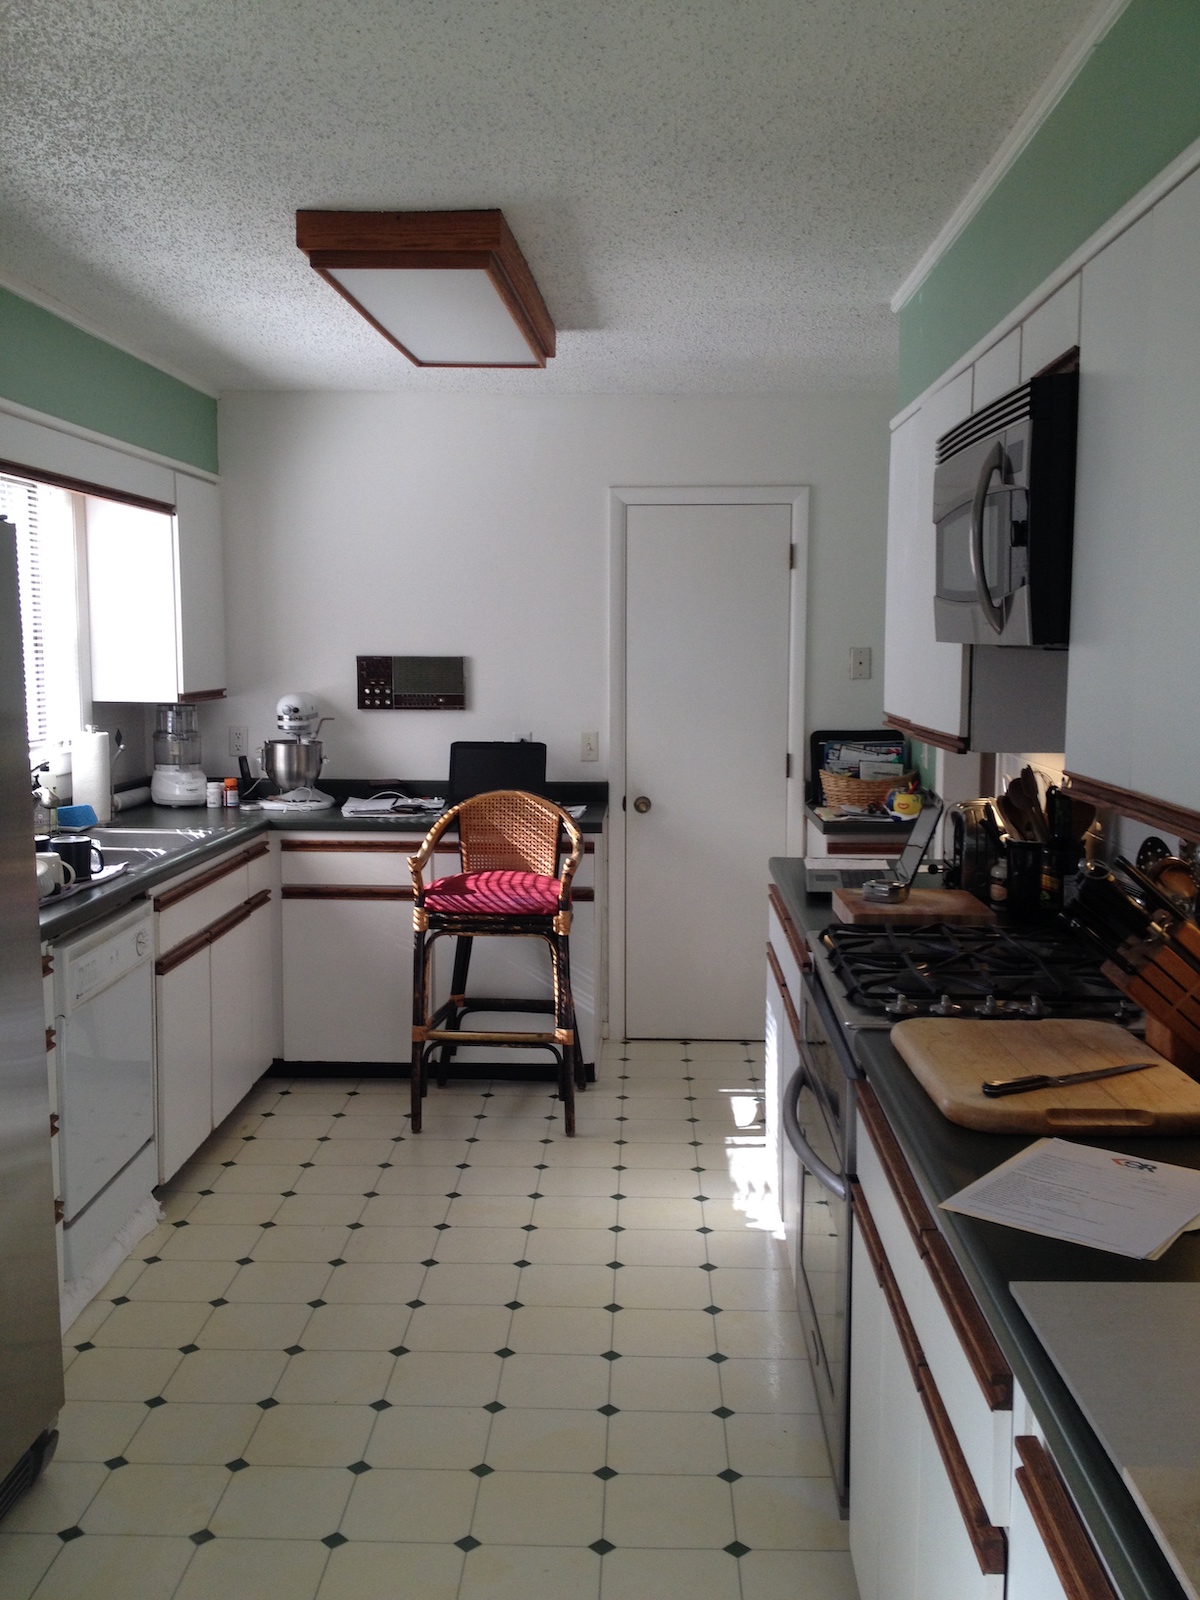 kitchen remodeling alpharetta before